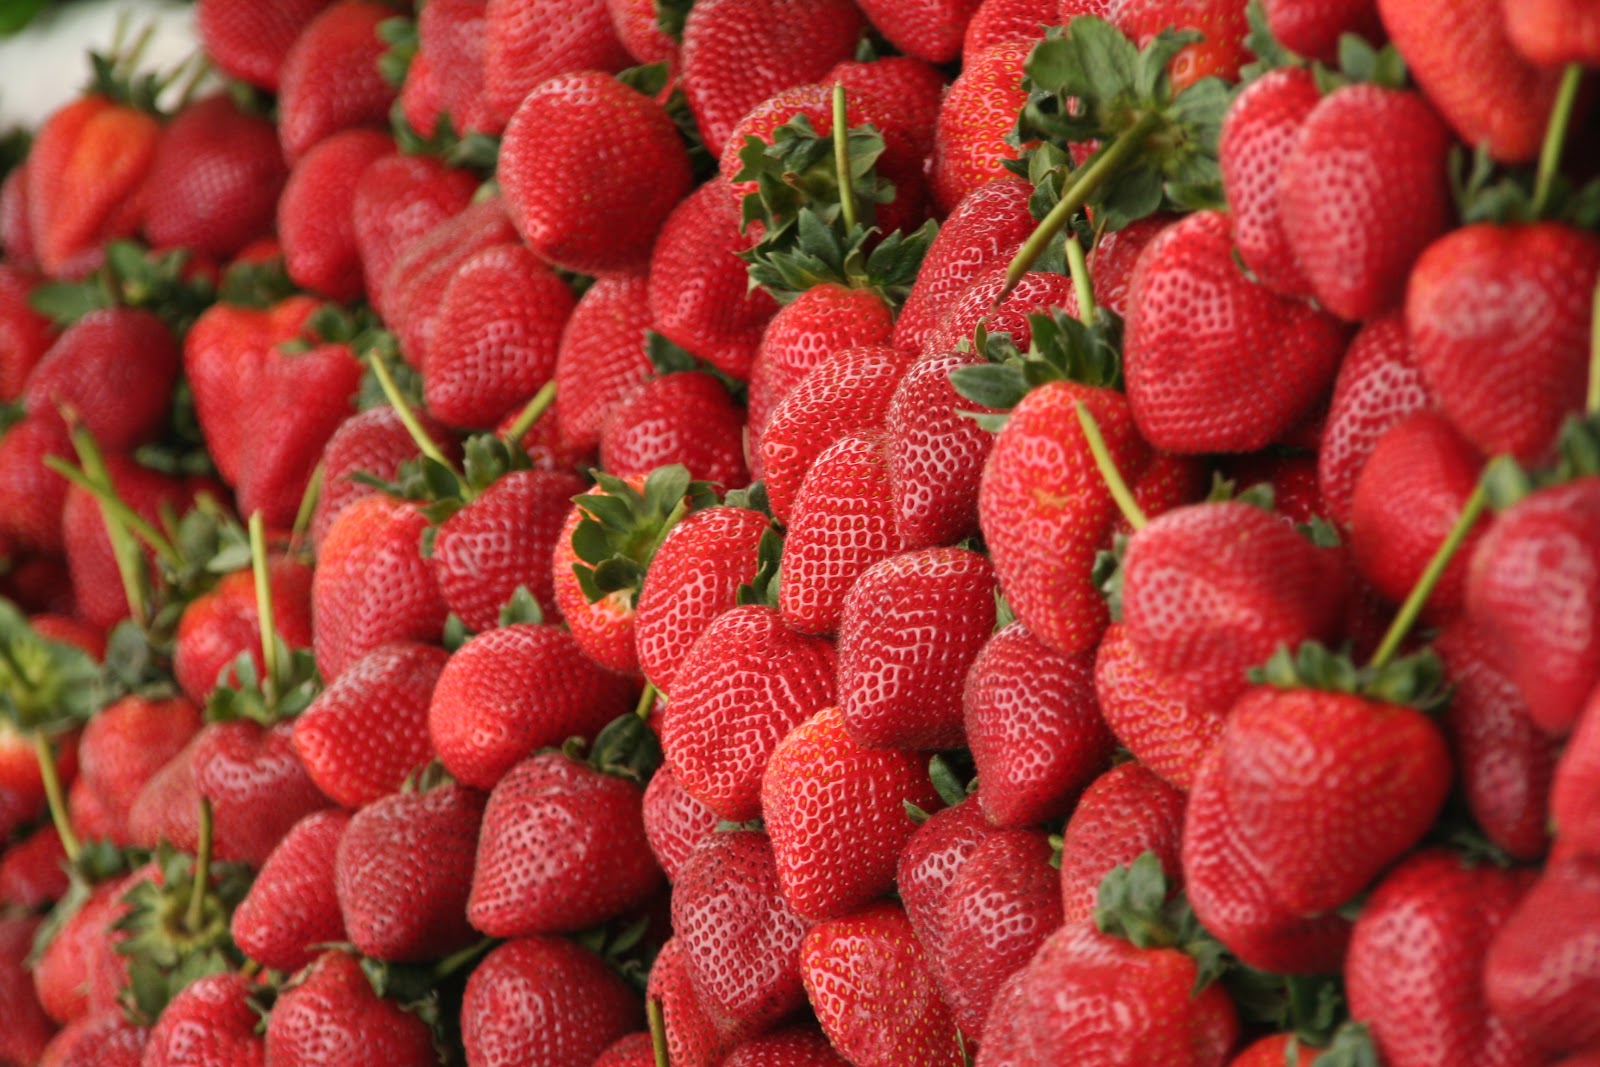 File:Strawberries 1.JPG